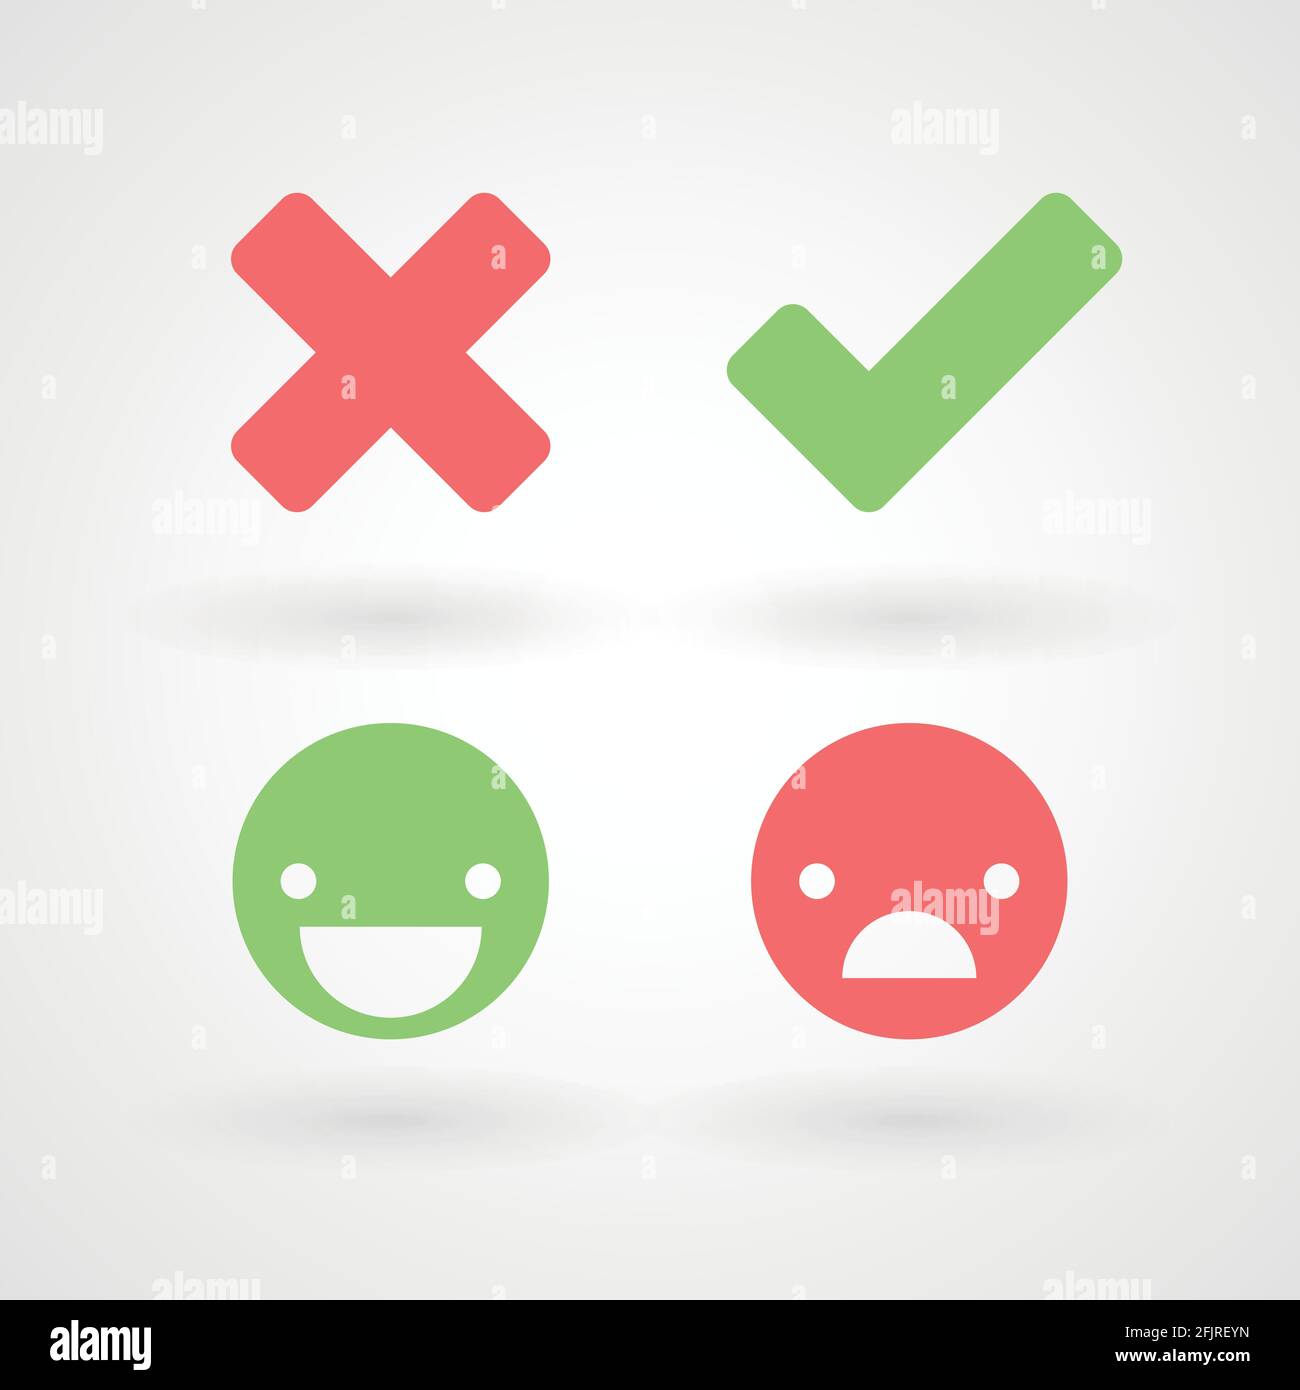 Symbole für falsche und rechte Häkchen. Glückliche und unglückliche Smileys. Vektorgrafik, flaches Design Stock Vektor